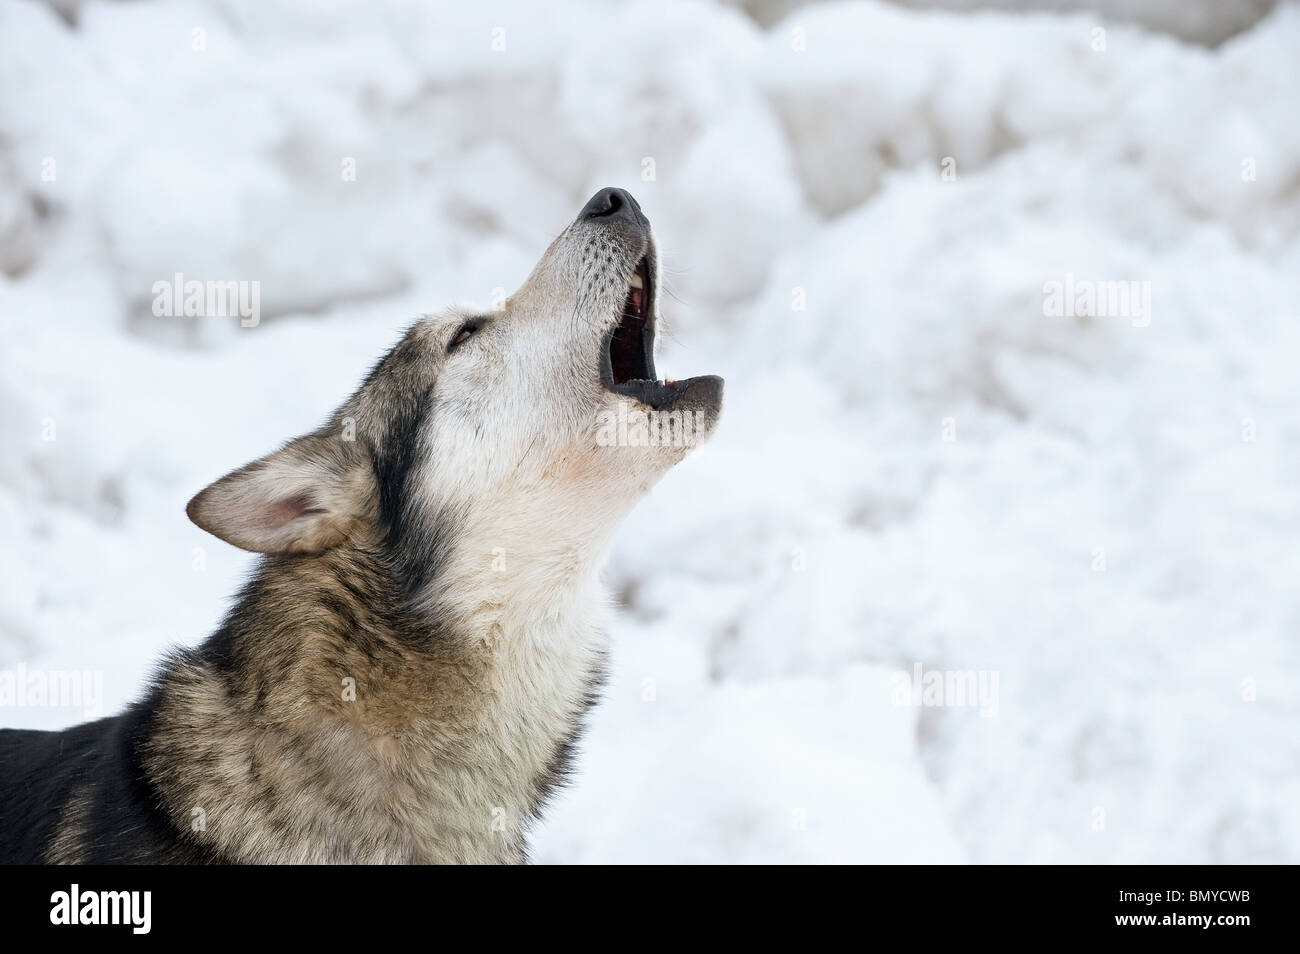 husky howling